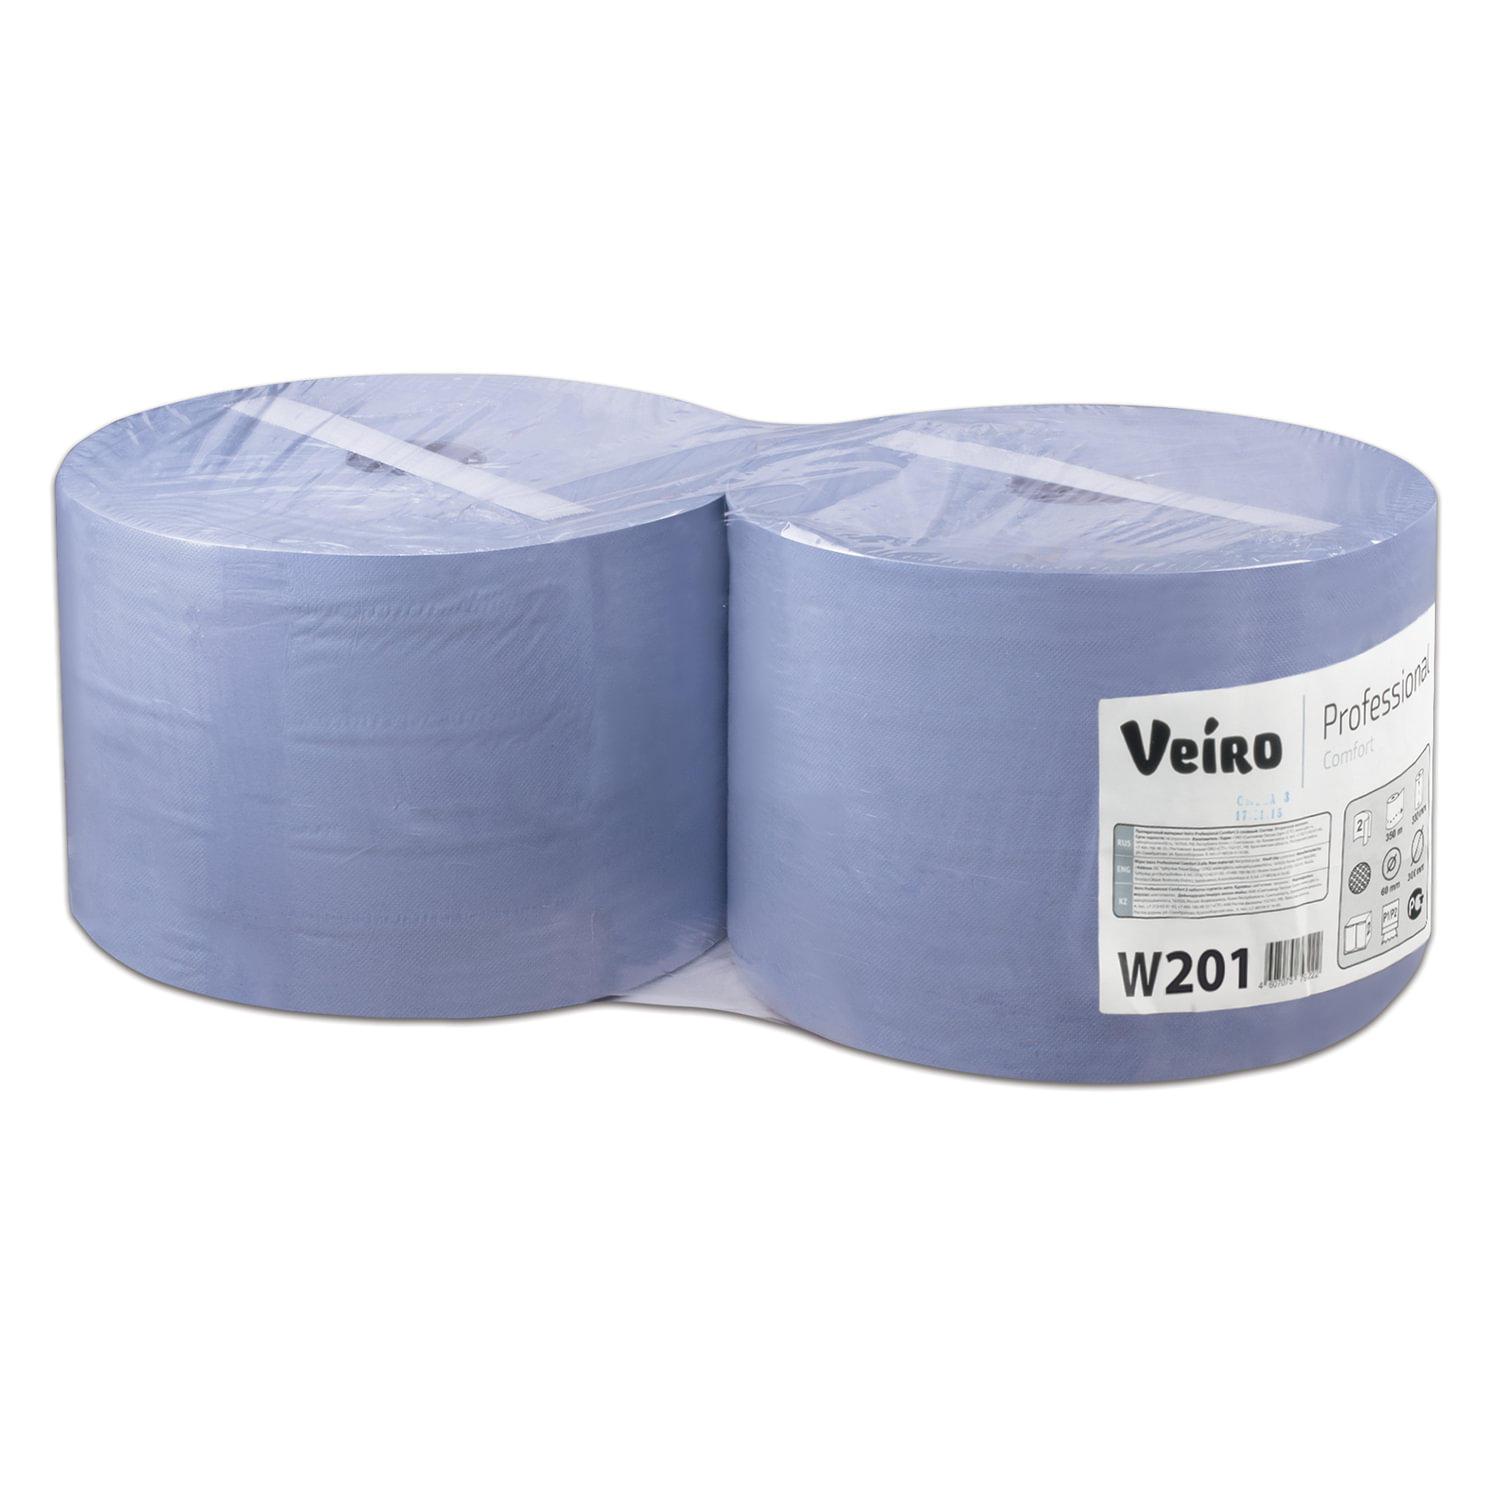 Бумага Veiro Система W1/P1,P2 2шт W201 1000 листов sibel бумага для химии 74 50 мм 1000 листов